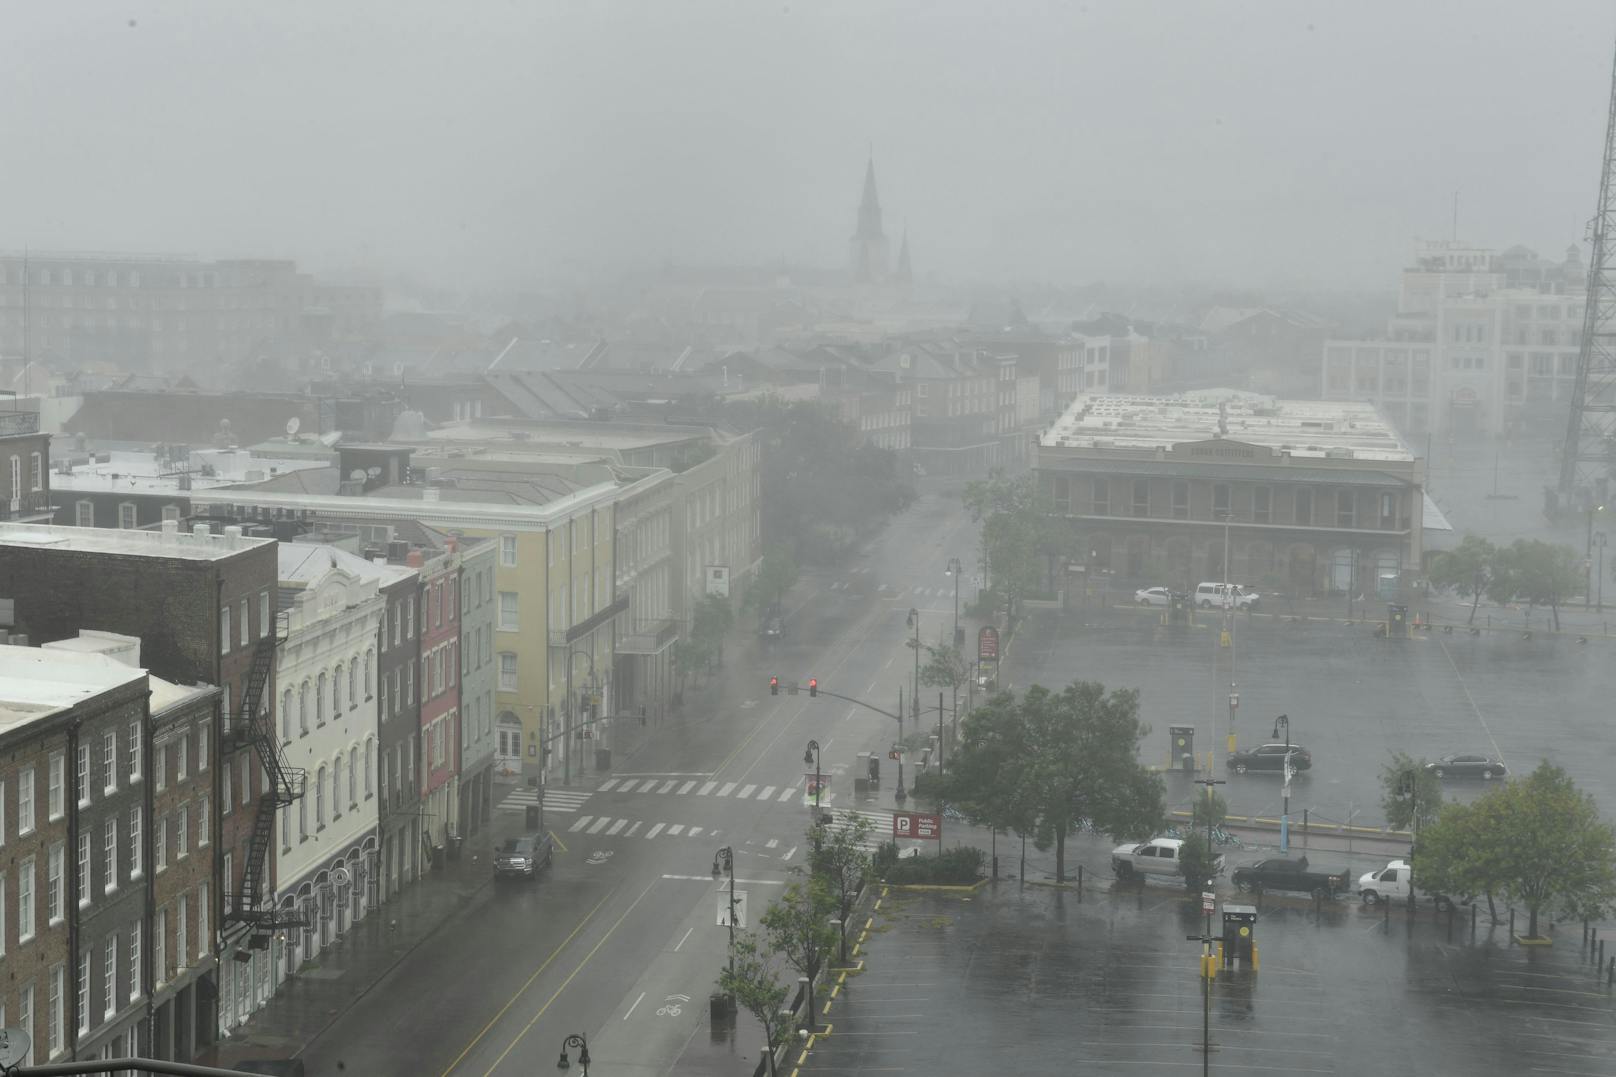 Hurrikan Ida hat die Küste des US-Staats Louisiana erreicht. Im gesamten Stadtgebiet von New Orleans ist der Strom ausgefallen.